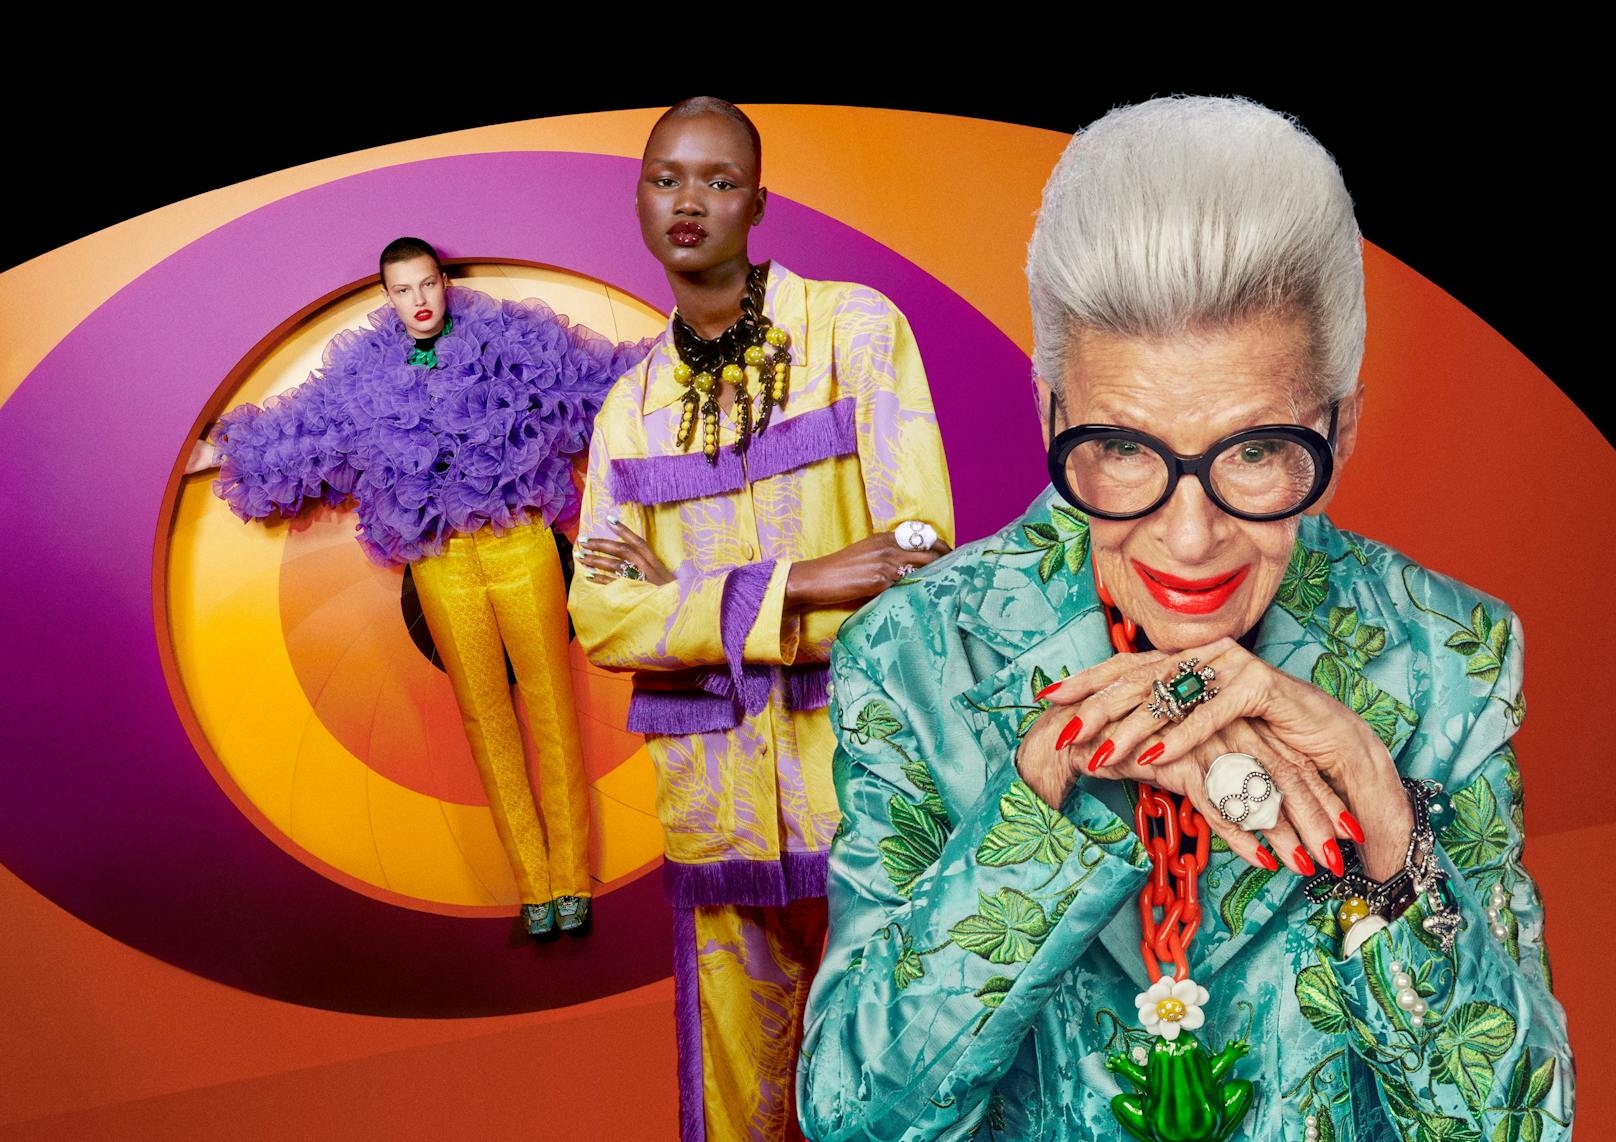 Das bunte Leben der ältesten Fashion-Ikone: Iris Apfel kommt ab dem 31. März mit einer eigenen Kollektion bei H&M in ausgewählte Stores und Online.